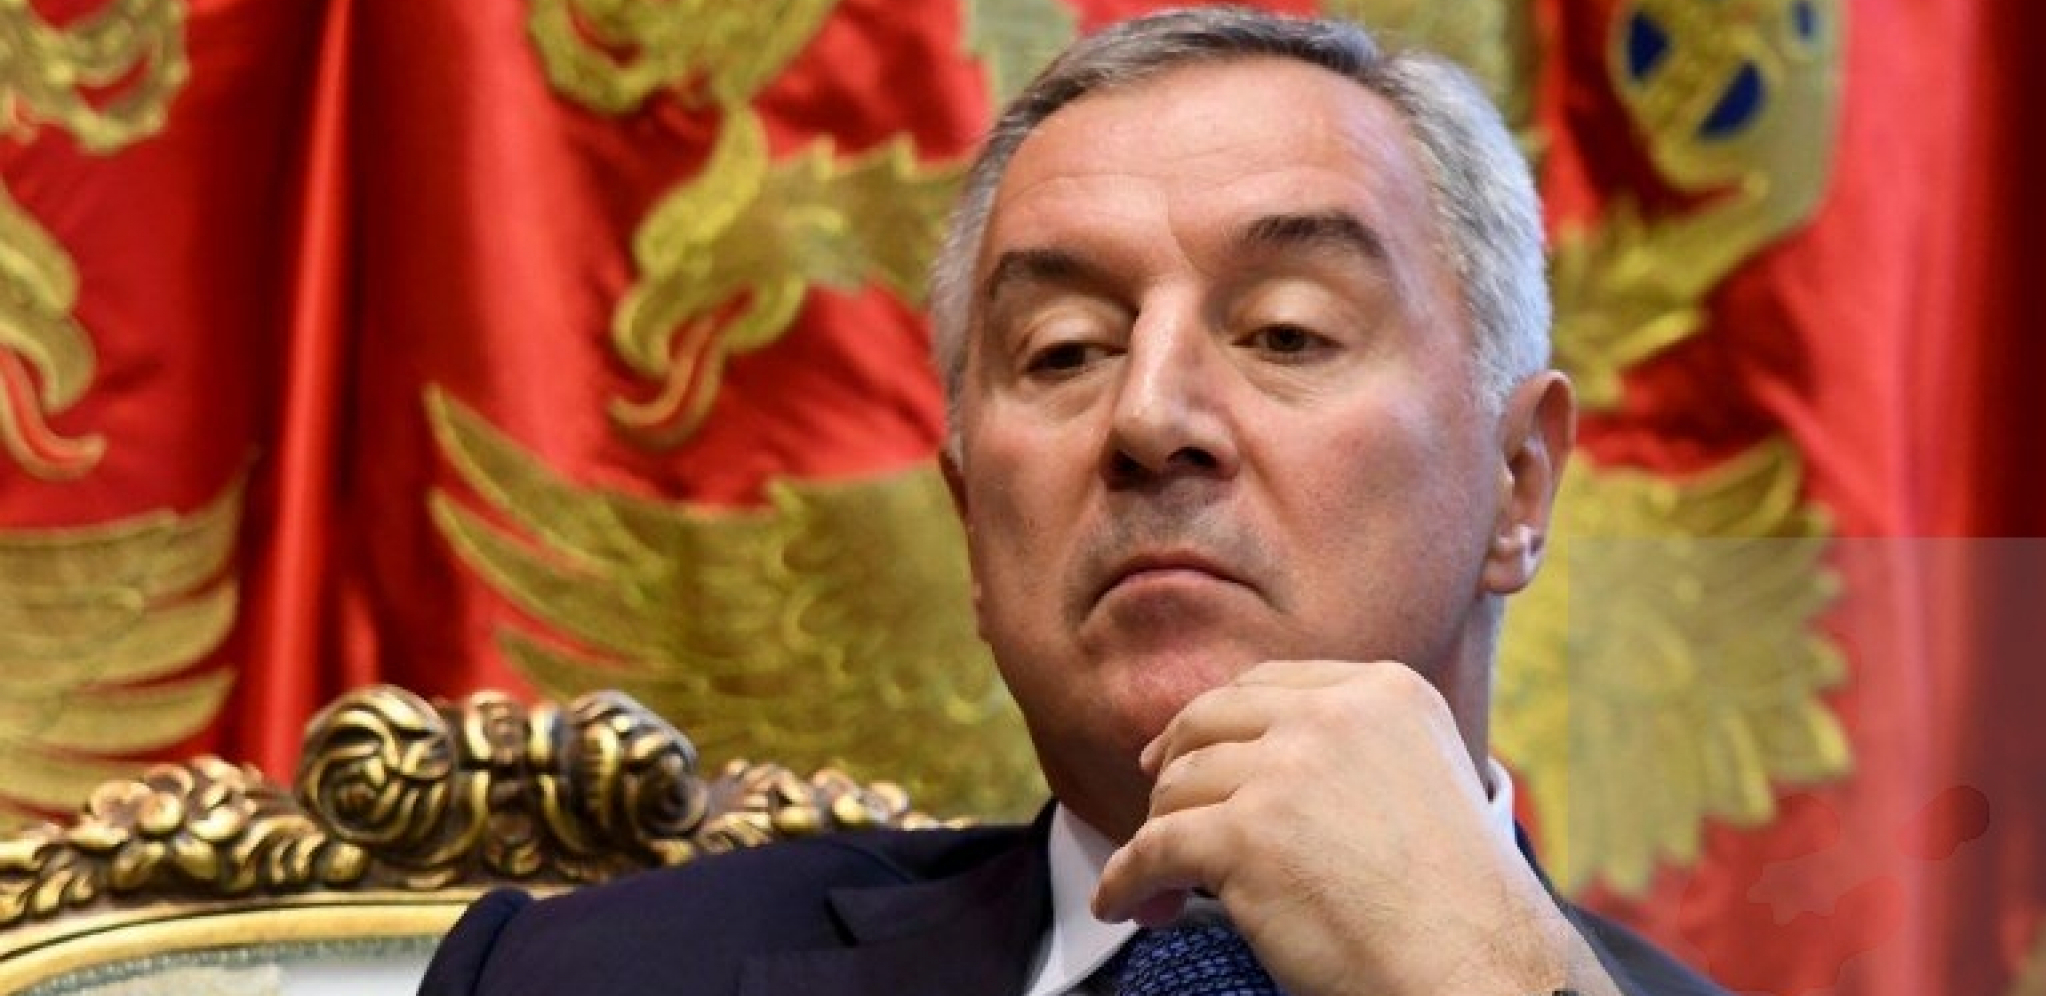 MILO PONOVO UDARA NA SRBIJU! Crnogorski diktator ne prestaje da napada SPC